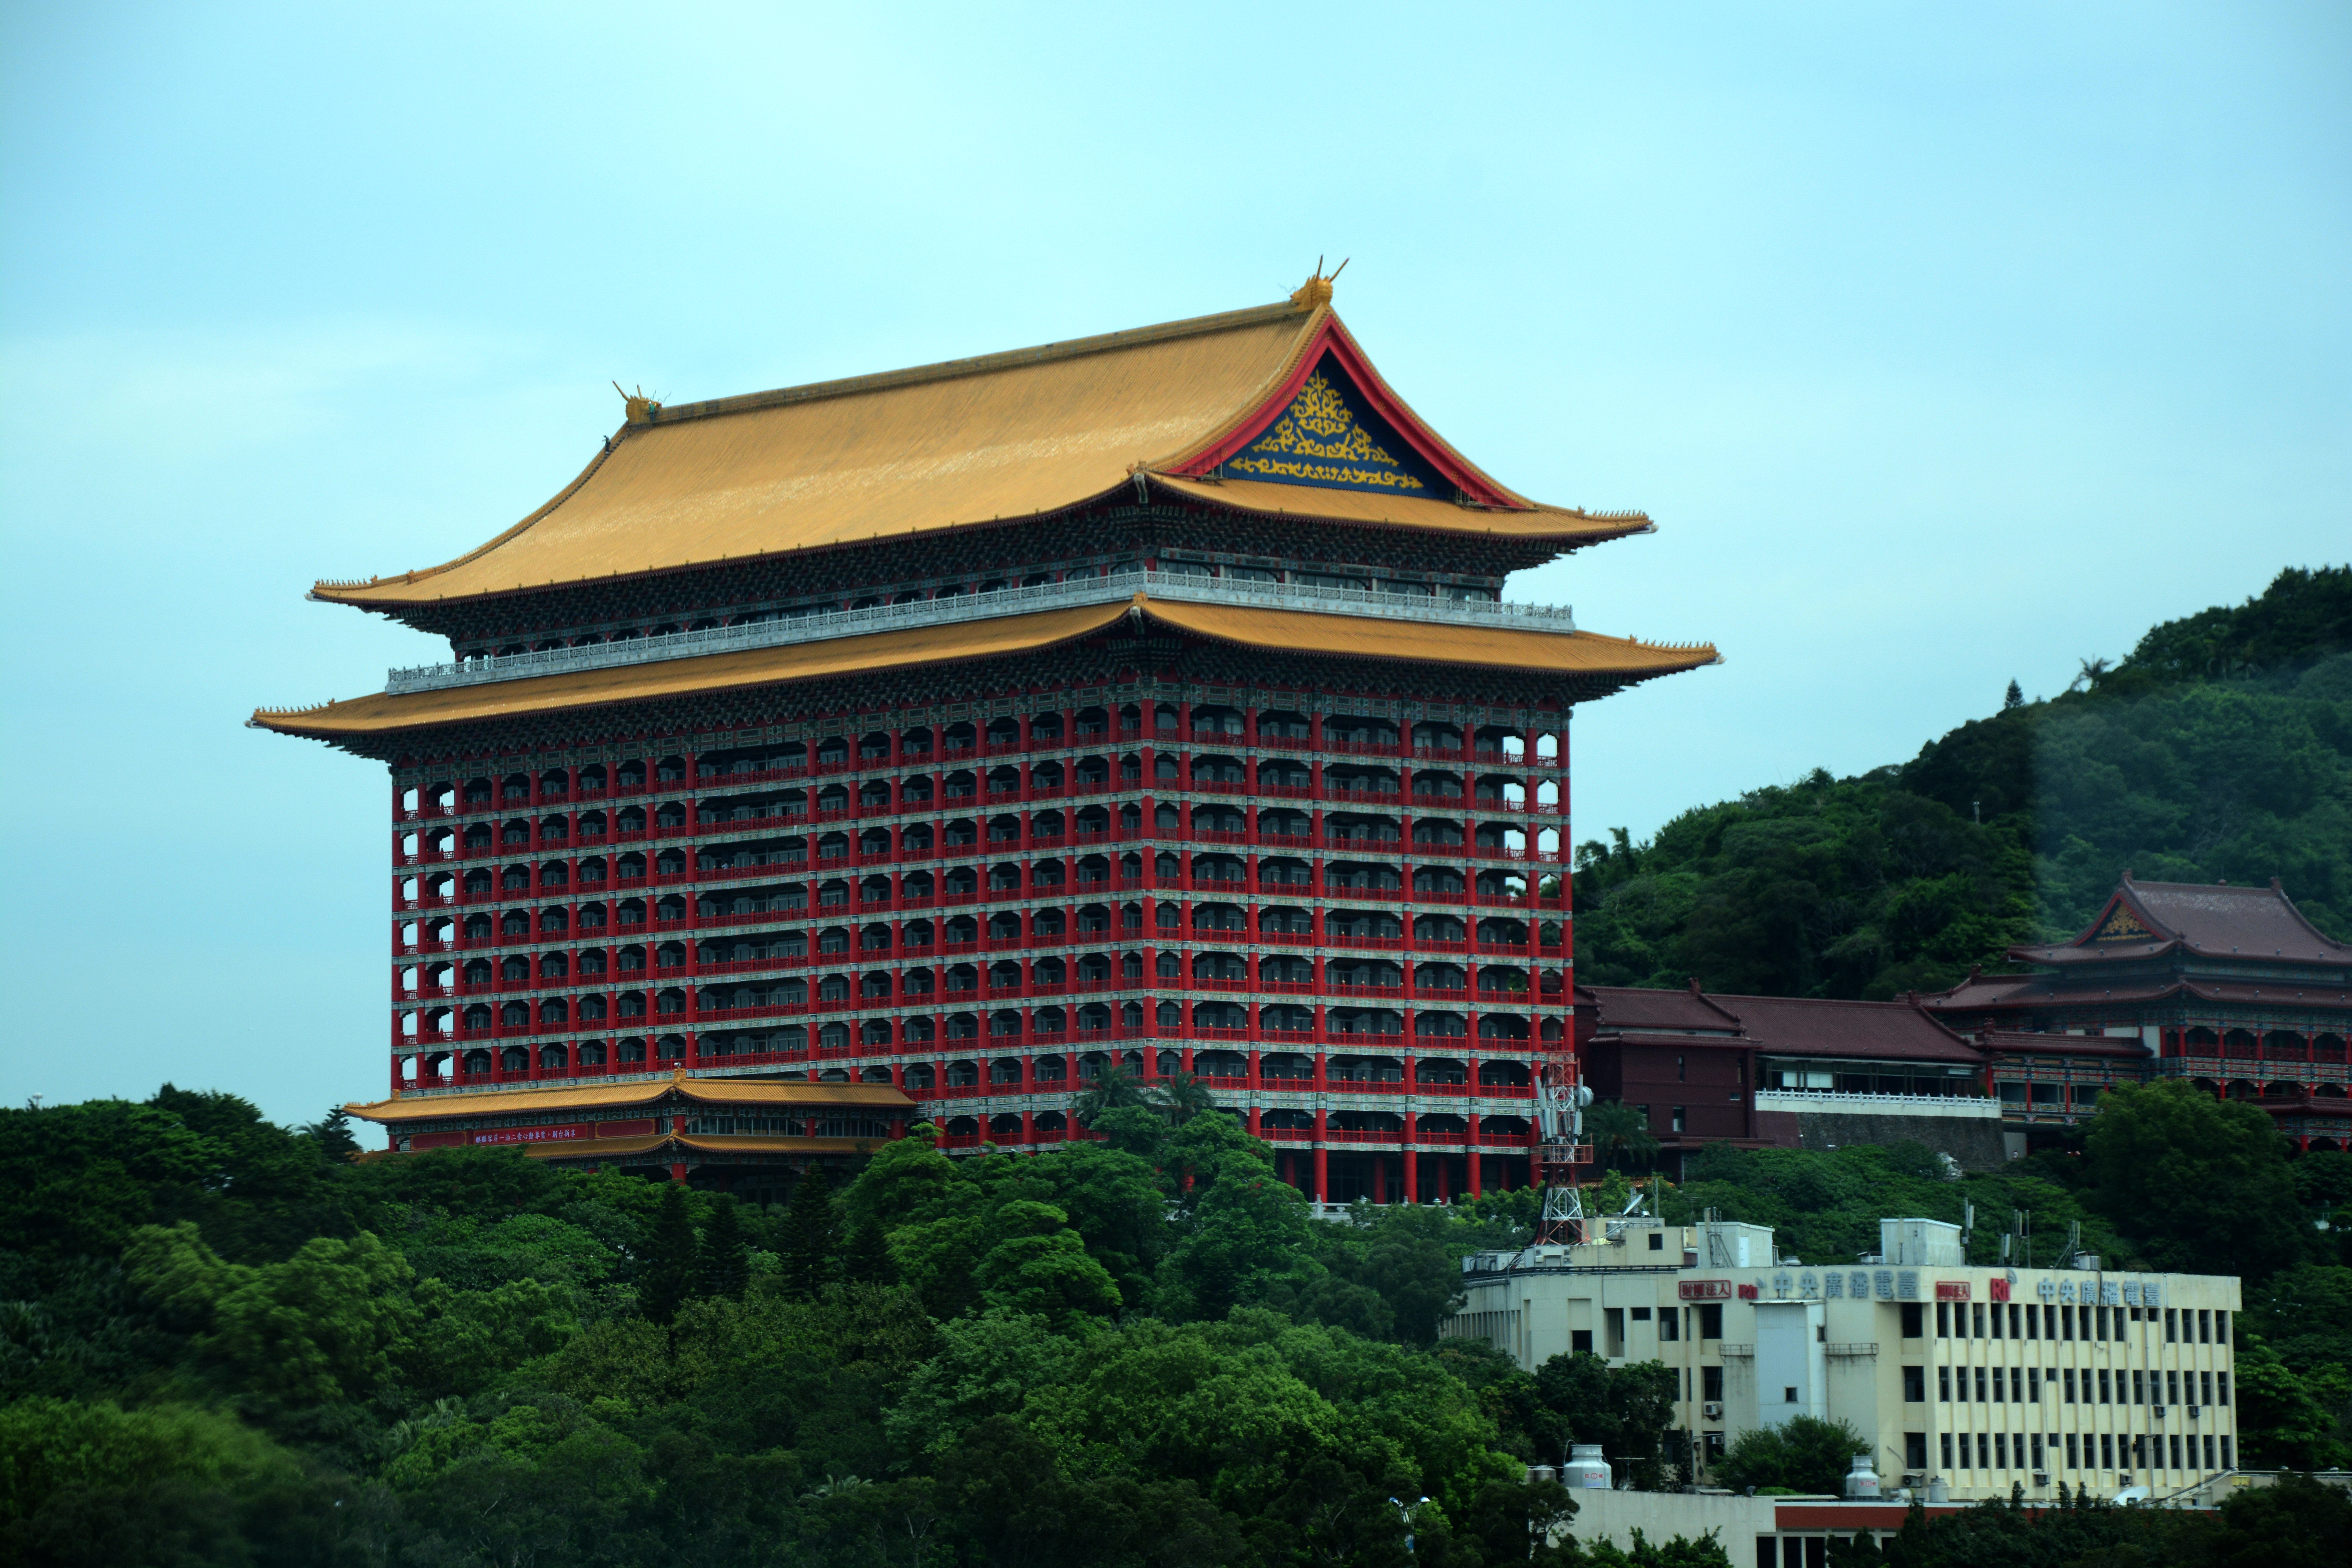 旅游大巴隔窗随拍:圆山大饭店,宋美龄亲手打造的国宾馆,来台湾的各国